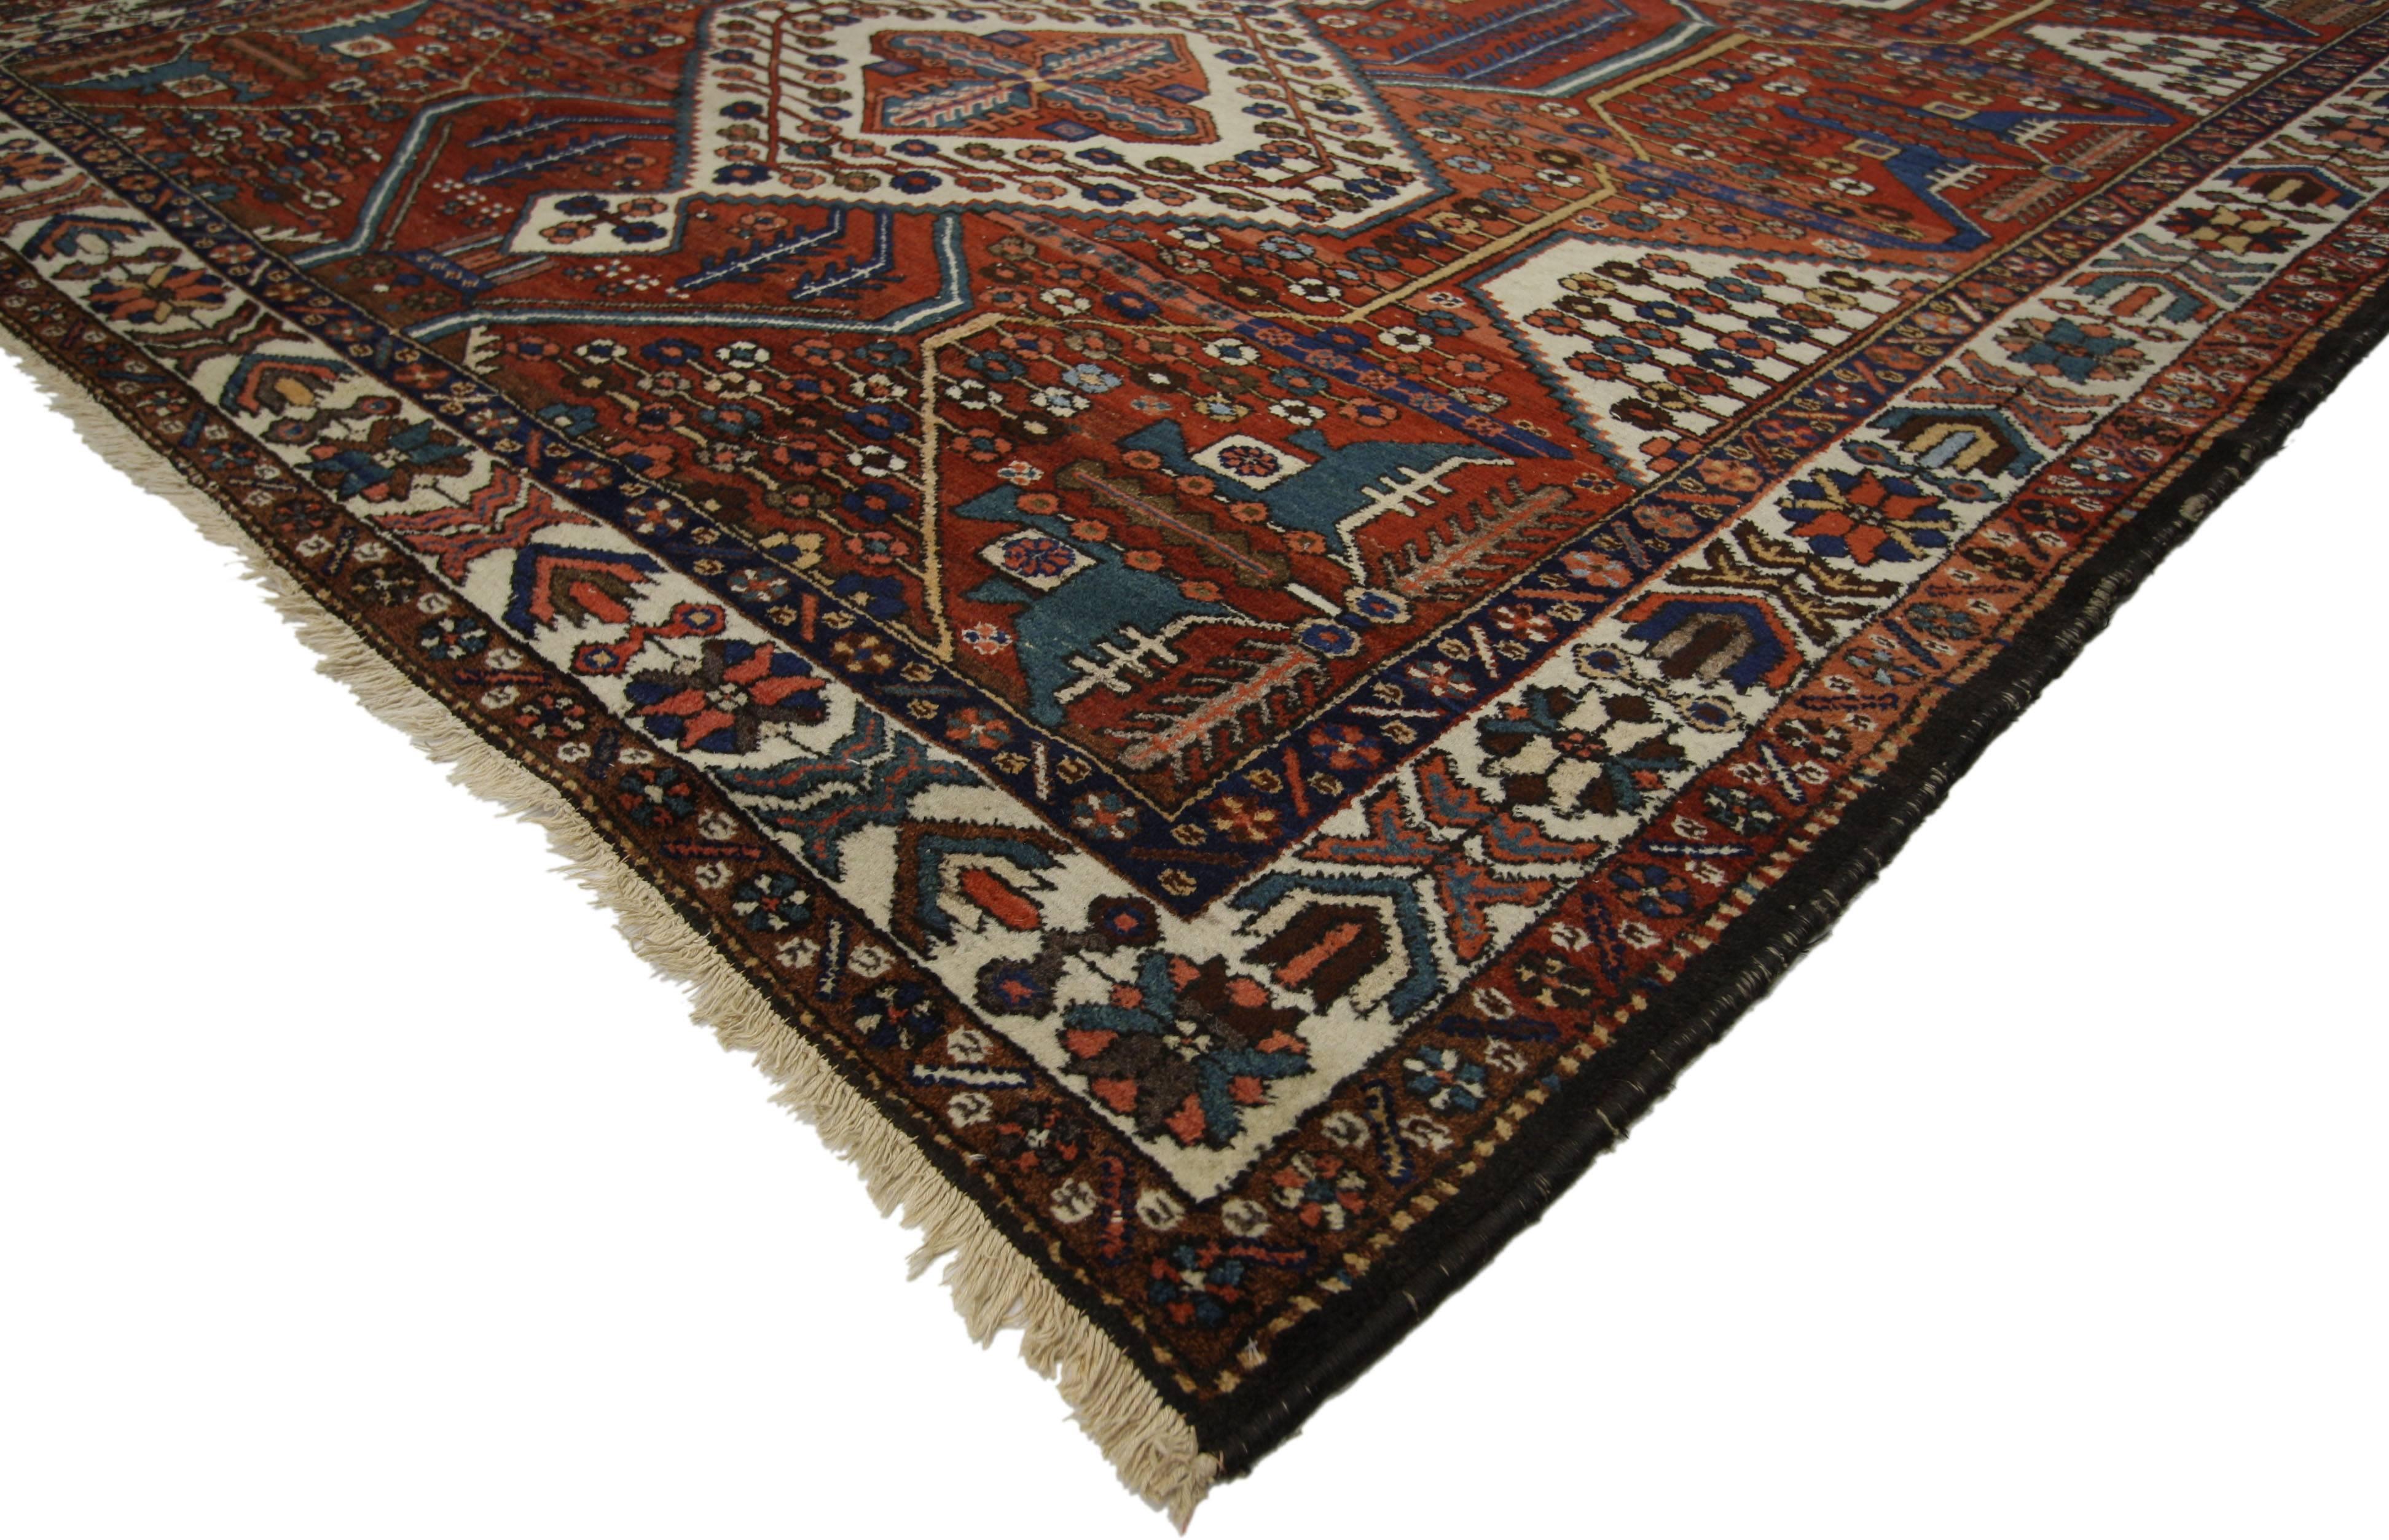 73391 Antique Persian Bakhtiari Rug with Modern Tribal Style 06'10 x 09'11. Tapis Bakhtiari persan antique en laine nouée à la main, de style tribal moderne, présentant trois médaillons empilés de couleur crème entourés d'un motif géométrique. Il